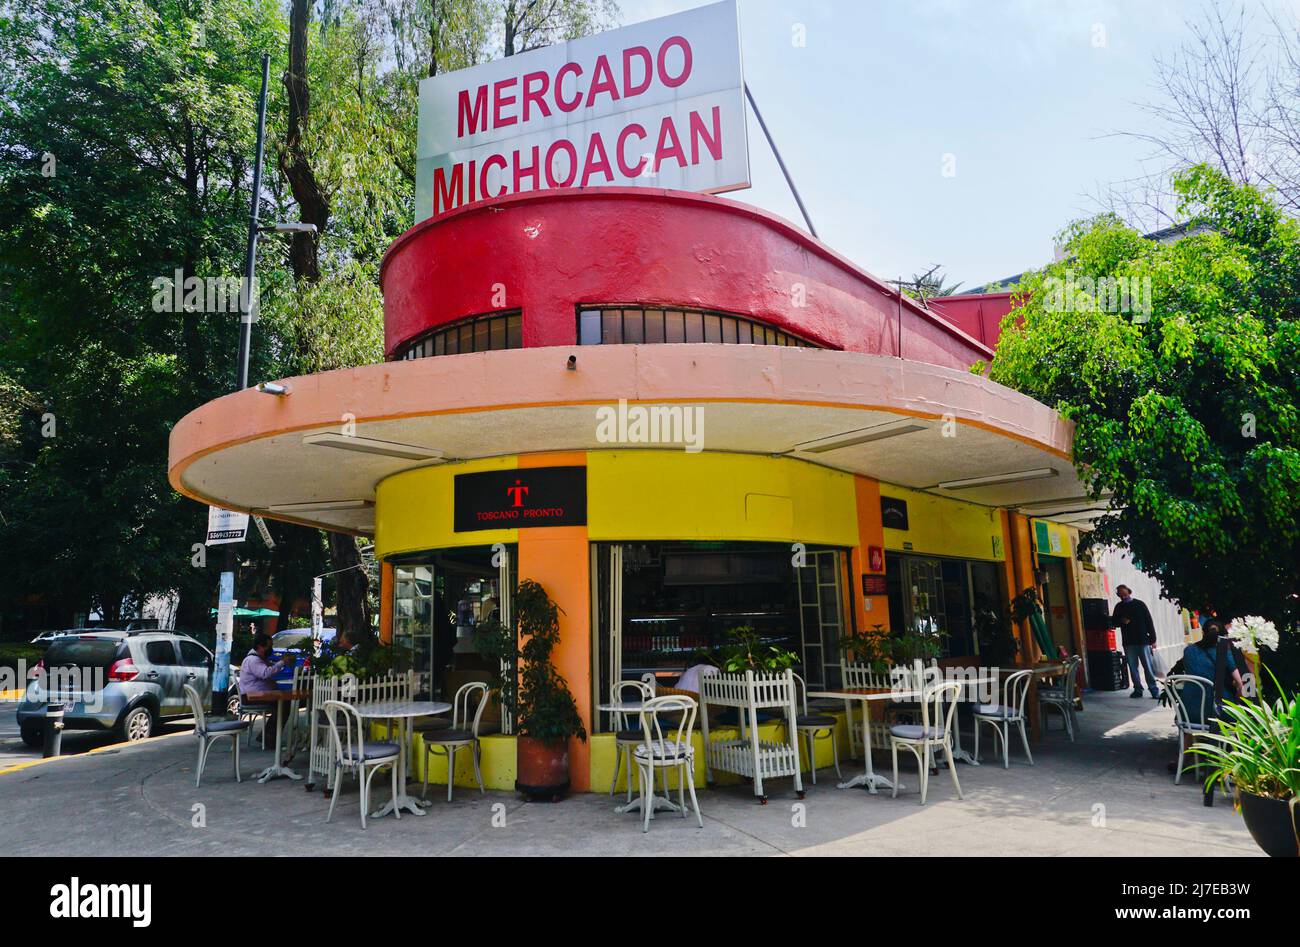 Toscano Pronto cafe, Mercado Michoacan in the wealthy Colonia Condesa neighborhood, Mexico City, Mexico Stock Photo